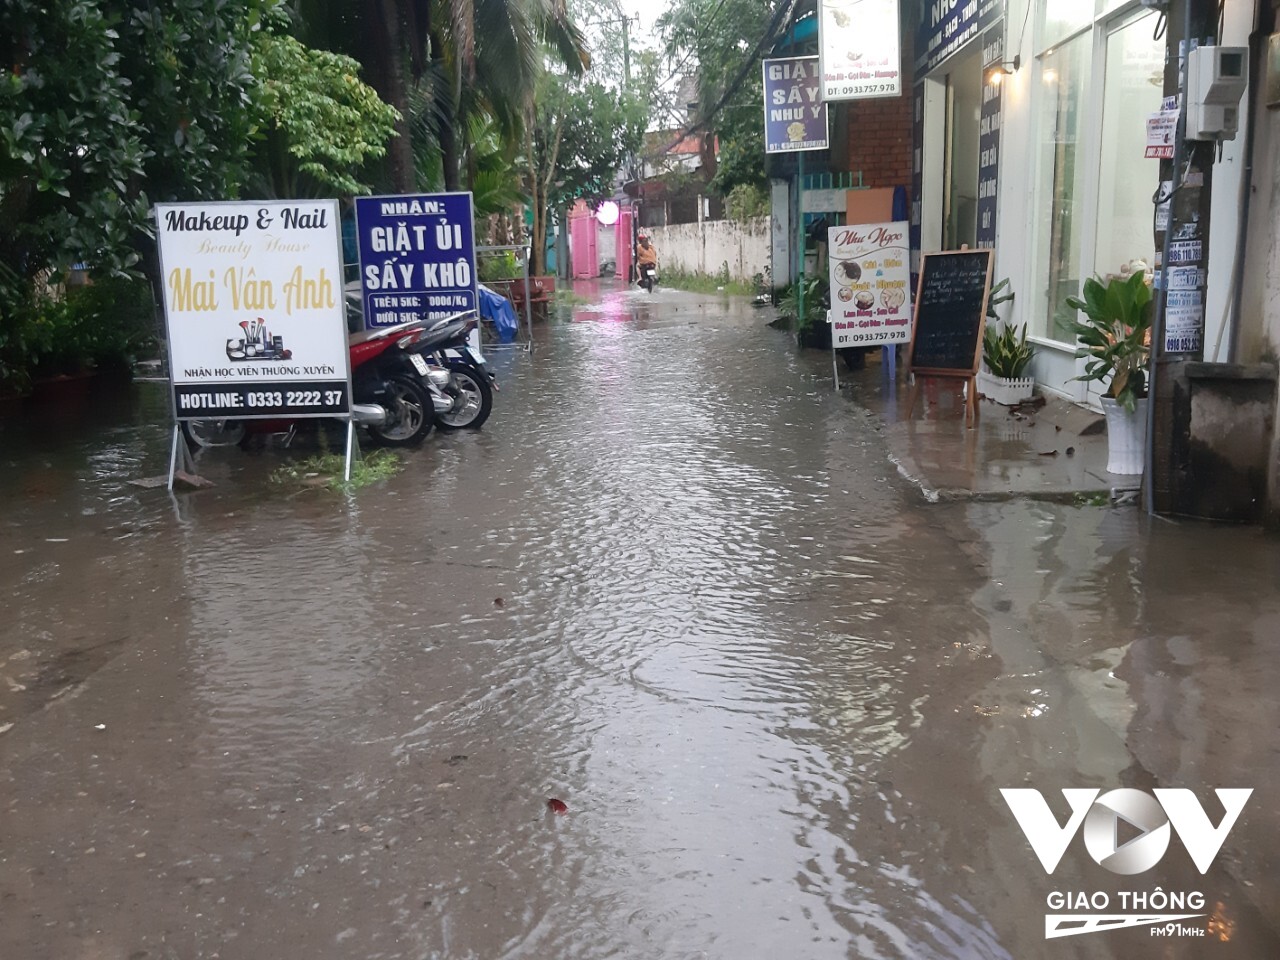 Lối vào các khu dân cư quanh kênh Mương Củi đều bị ngập mỗi khi mưa và triều cường dâng.